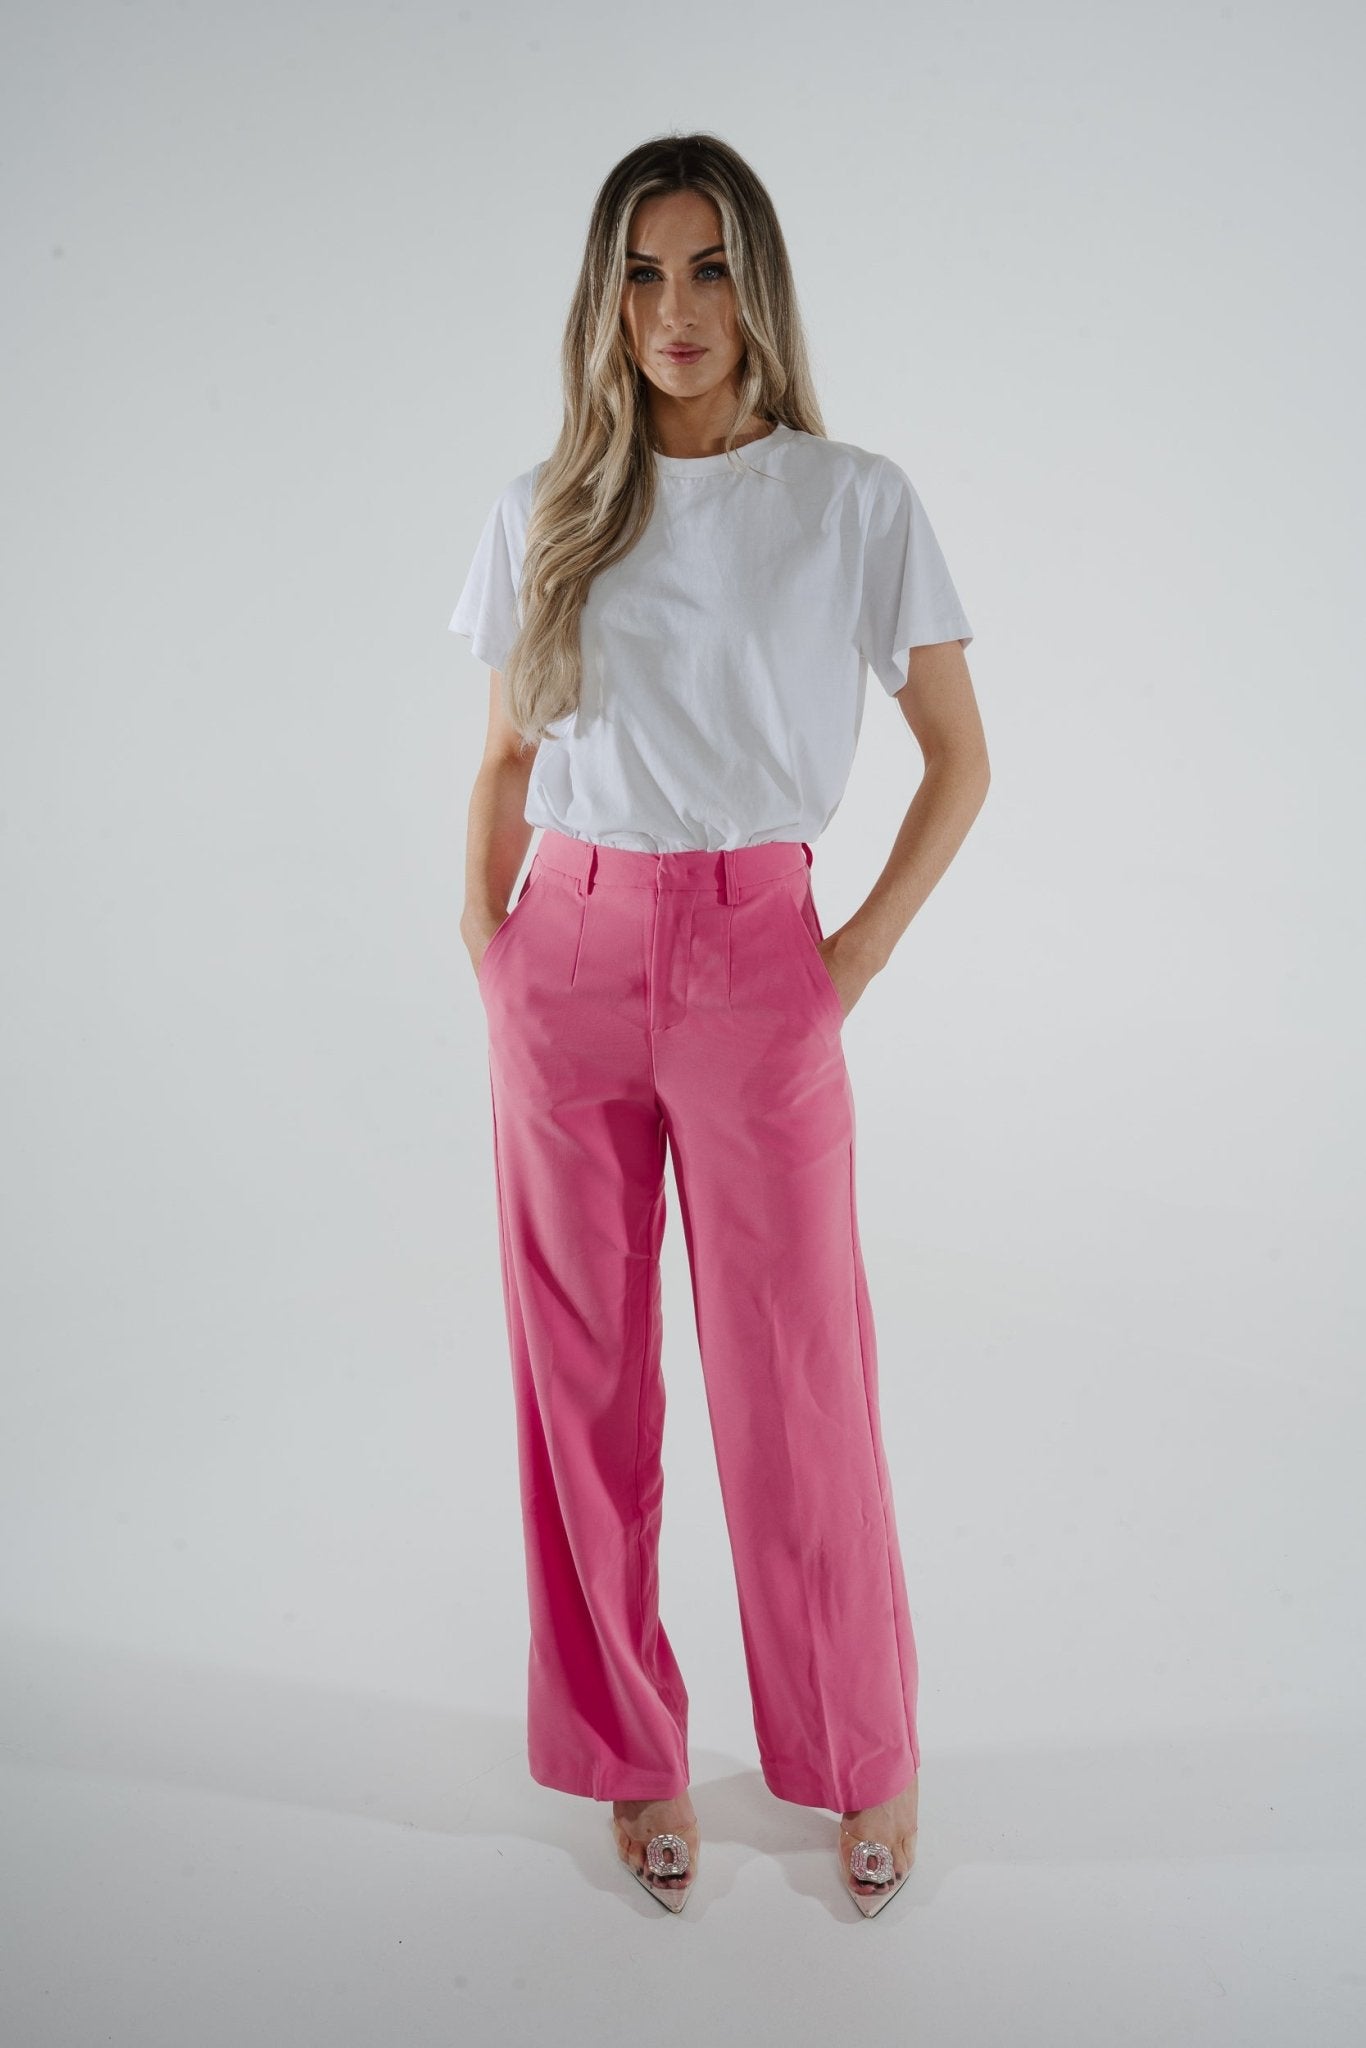 Freya Pleat Front Wide Leg Trouser In Pink - The Walk in Wardrobe